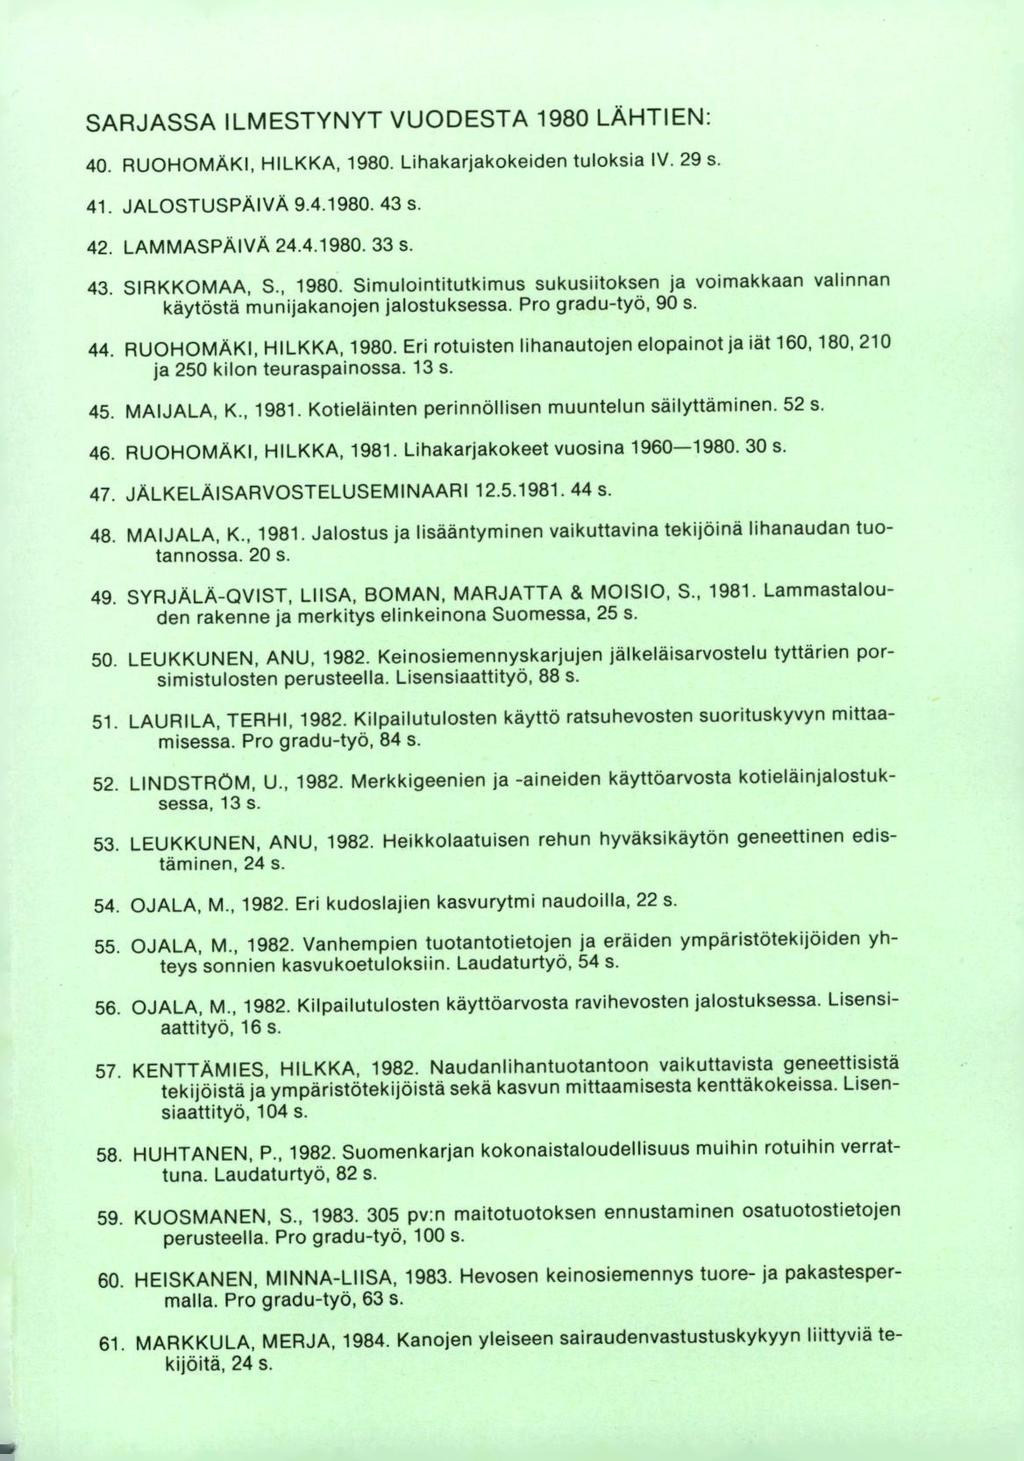 SARJASSA ILMESTYNYT VUODESTA 1980 LÄHTIEN: RUOHOMÄKI, HILKKA, 1980. Lihakarjakokeiden tuloksia IV. 29 s. JALOSTUSPÄIVA 9.41980.43 s. LAMMASPÄIVA 24.4.1980. 33 s. SIRKKOMAA, S., 1980. Simulointitutkimus sukusiitoksen ja voimakkaan valinnan käytöstä munijakanojen jalostuksessa.